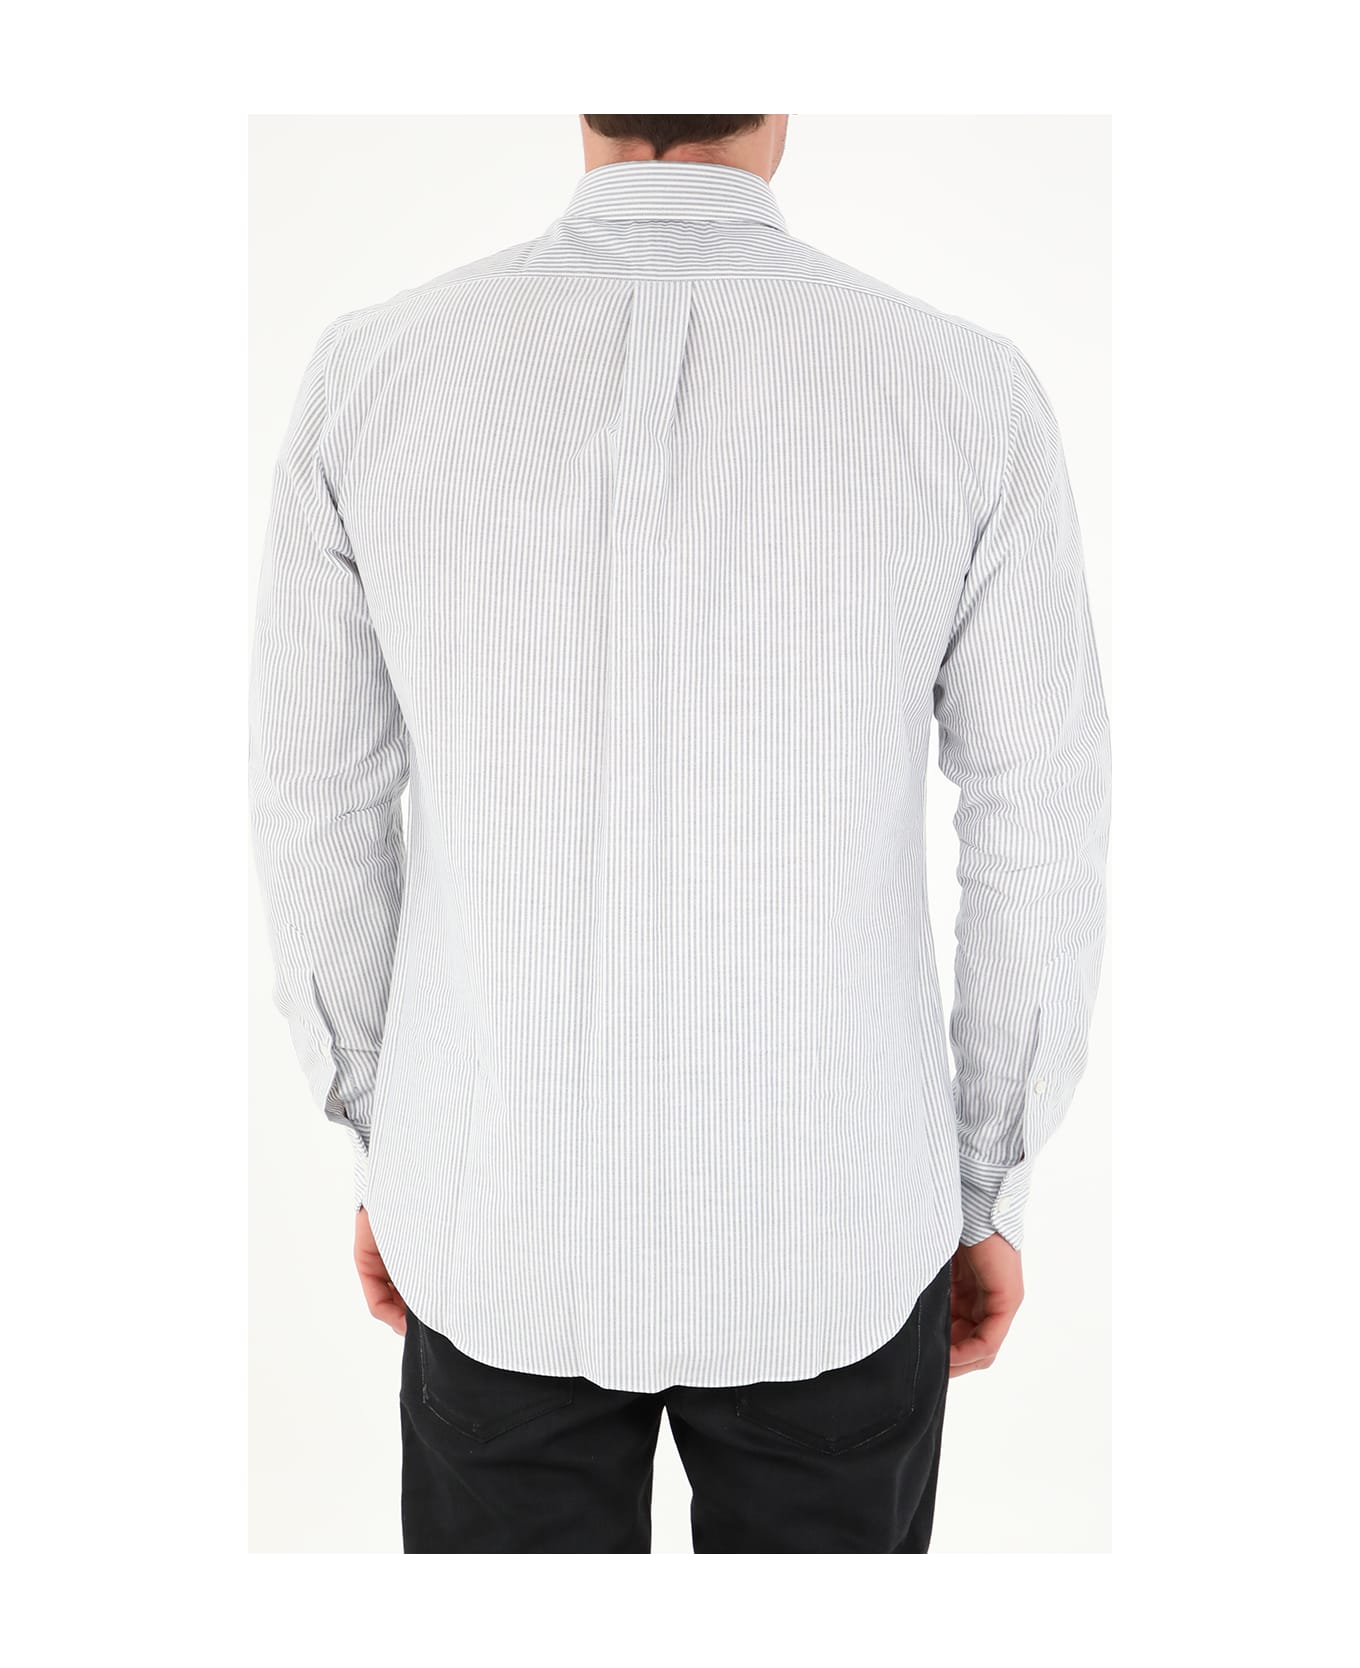 Salvatore Piccolo White And Blue Striped Shirt - WHITE